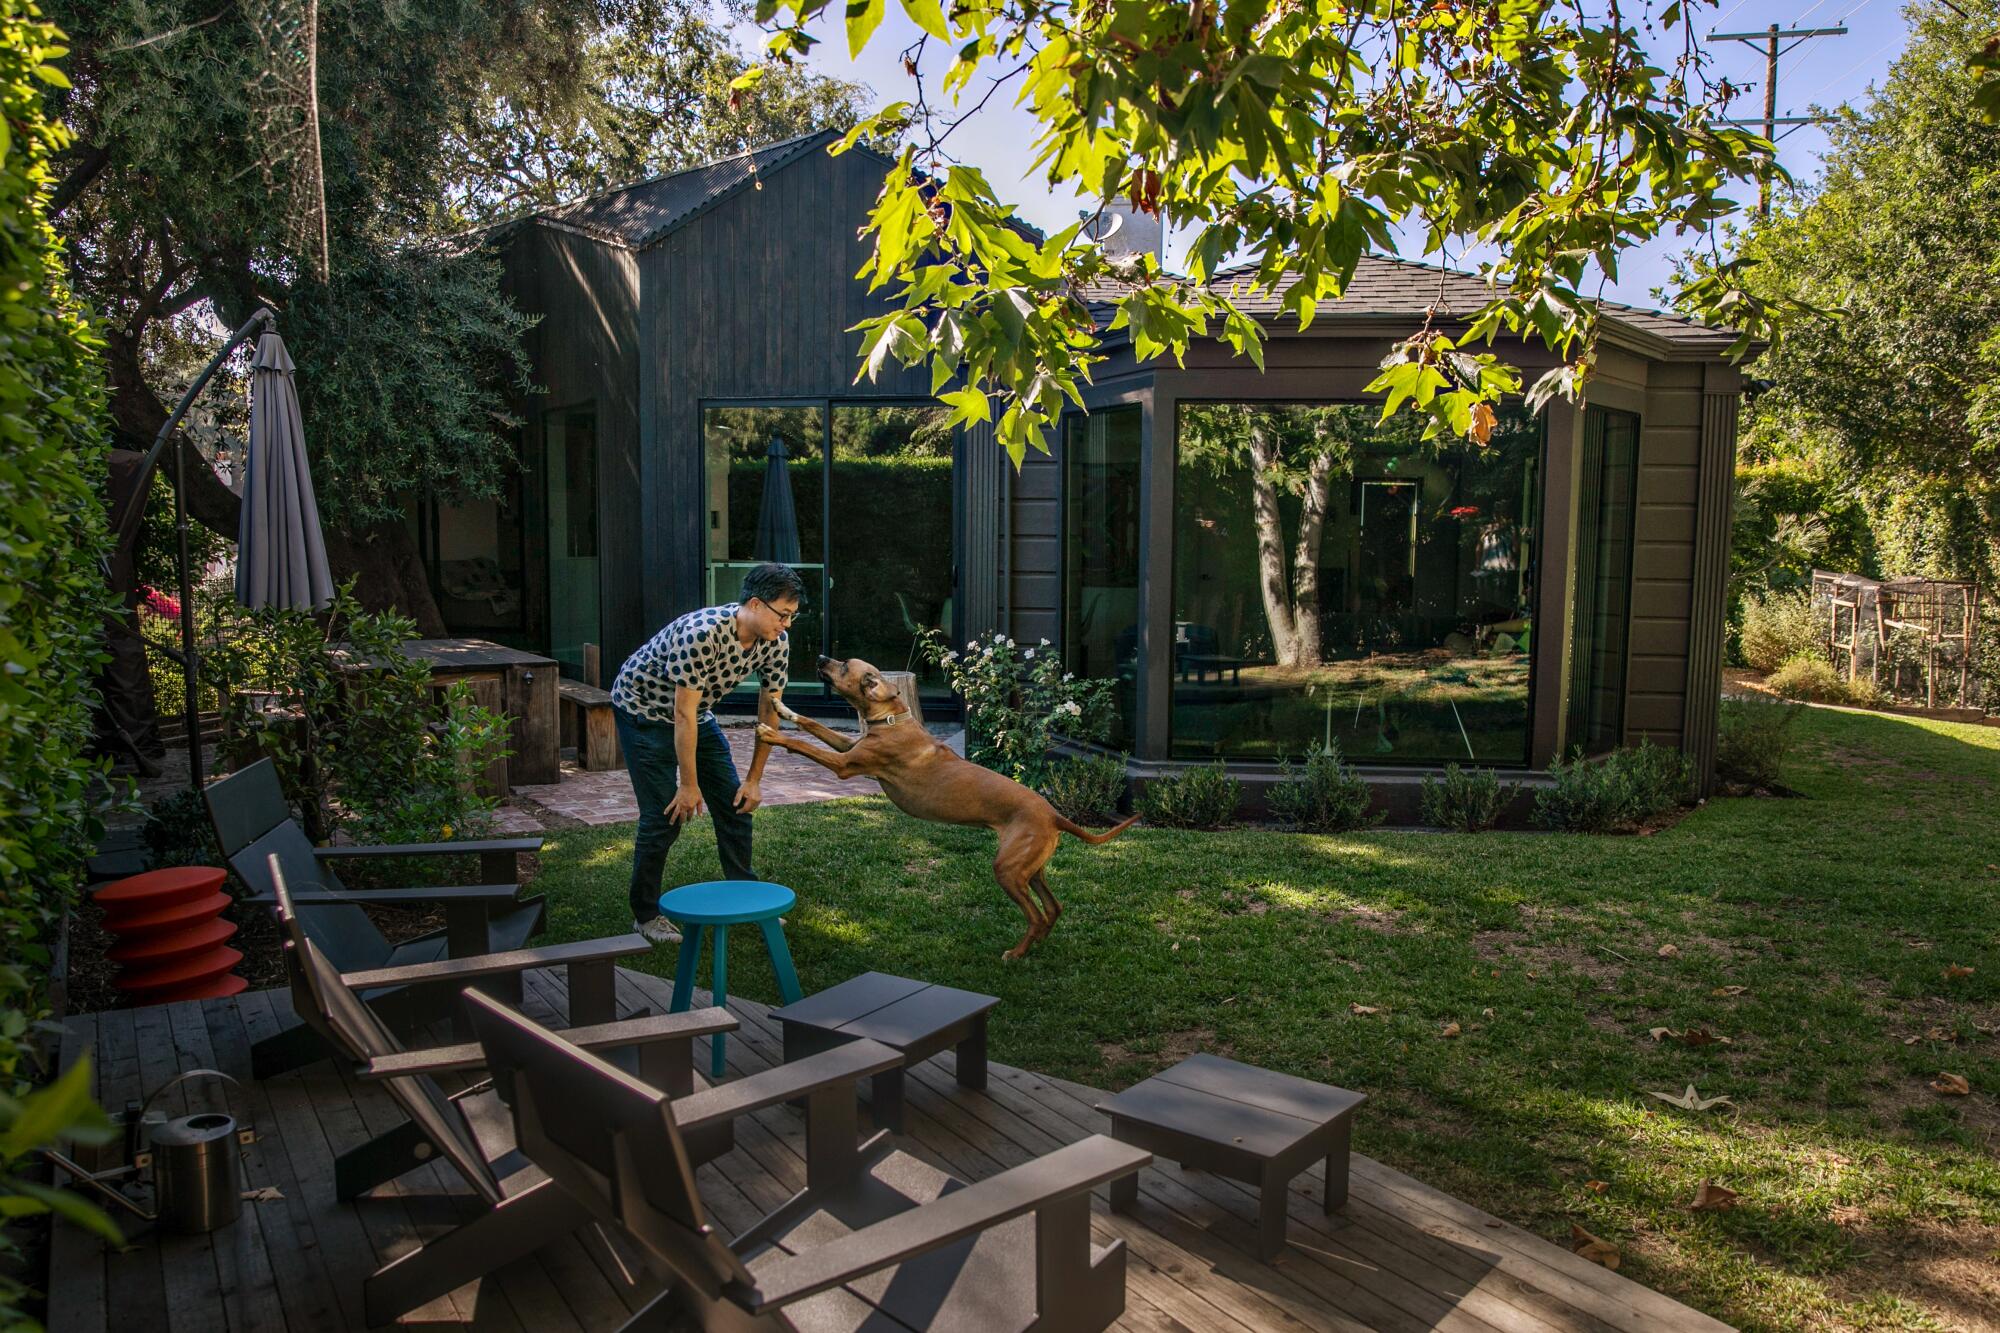 Un uomo gioca con un cane in un cortile.